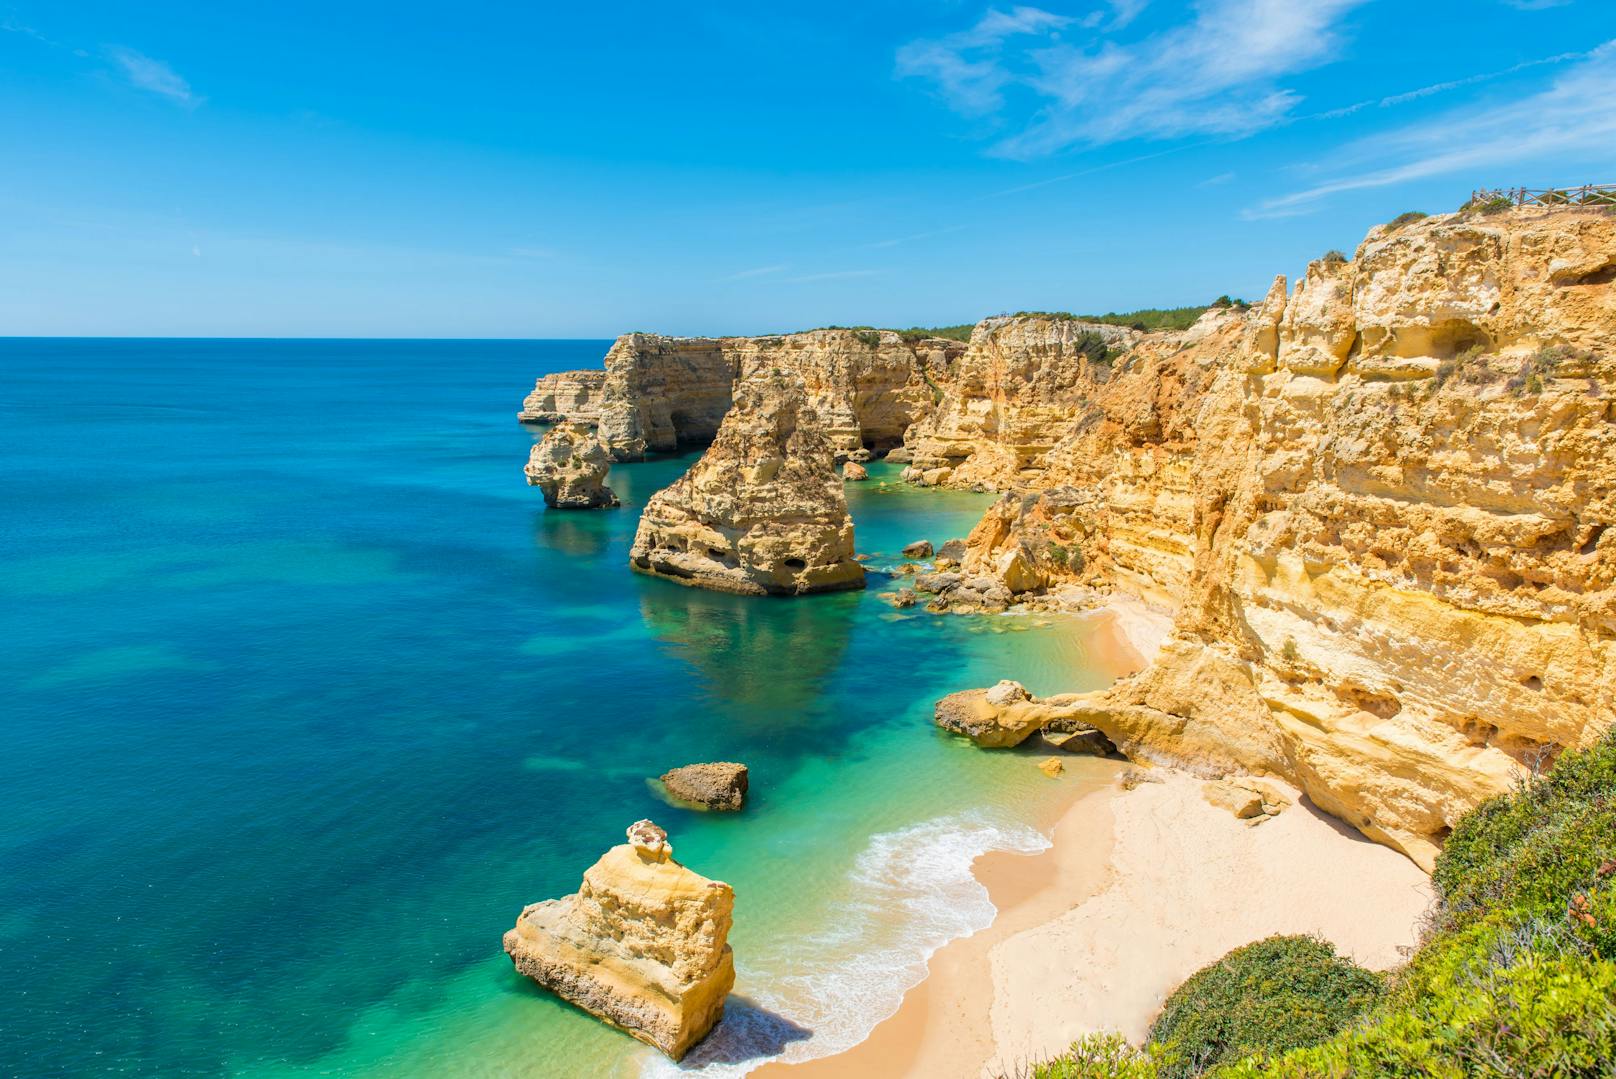 <strong>Algarve, Portugal:&nbsp;</strong>Die Küstenregion im Süden Portugals lockt nicht nur mit ihrer Traumkulisse, sondern auch noch mit angenehmen Temperaturen um die 27 Grad. Einzig das Wasser ist dort - wie das ganze Jahr über - mit etwa 20 Grad etwas frischer. Doch das entlohnen die einsamen Badebuchten und das türkisblaue Meer nach 3,5 Flugstunden.